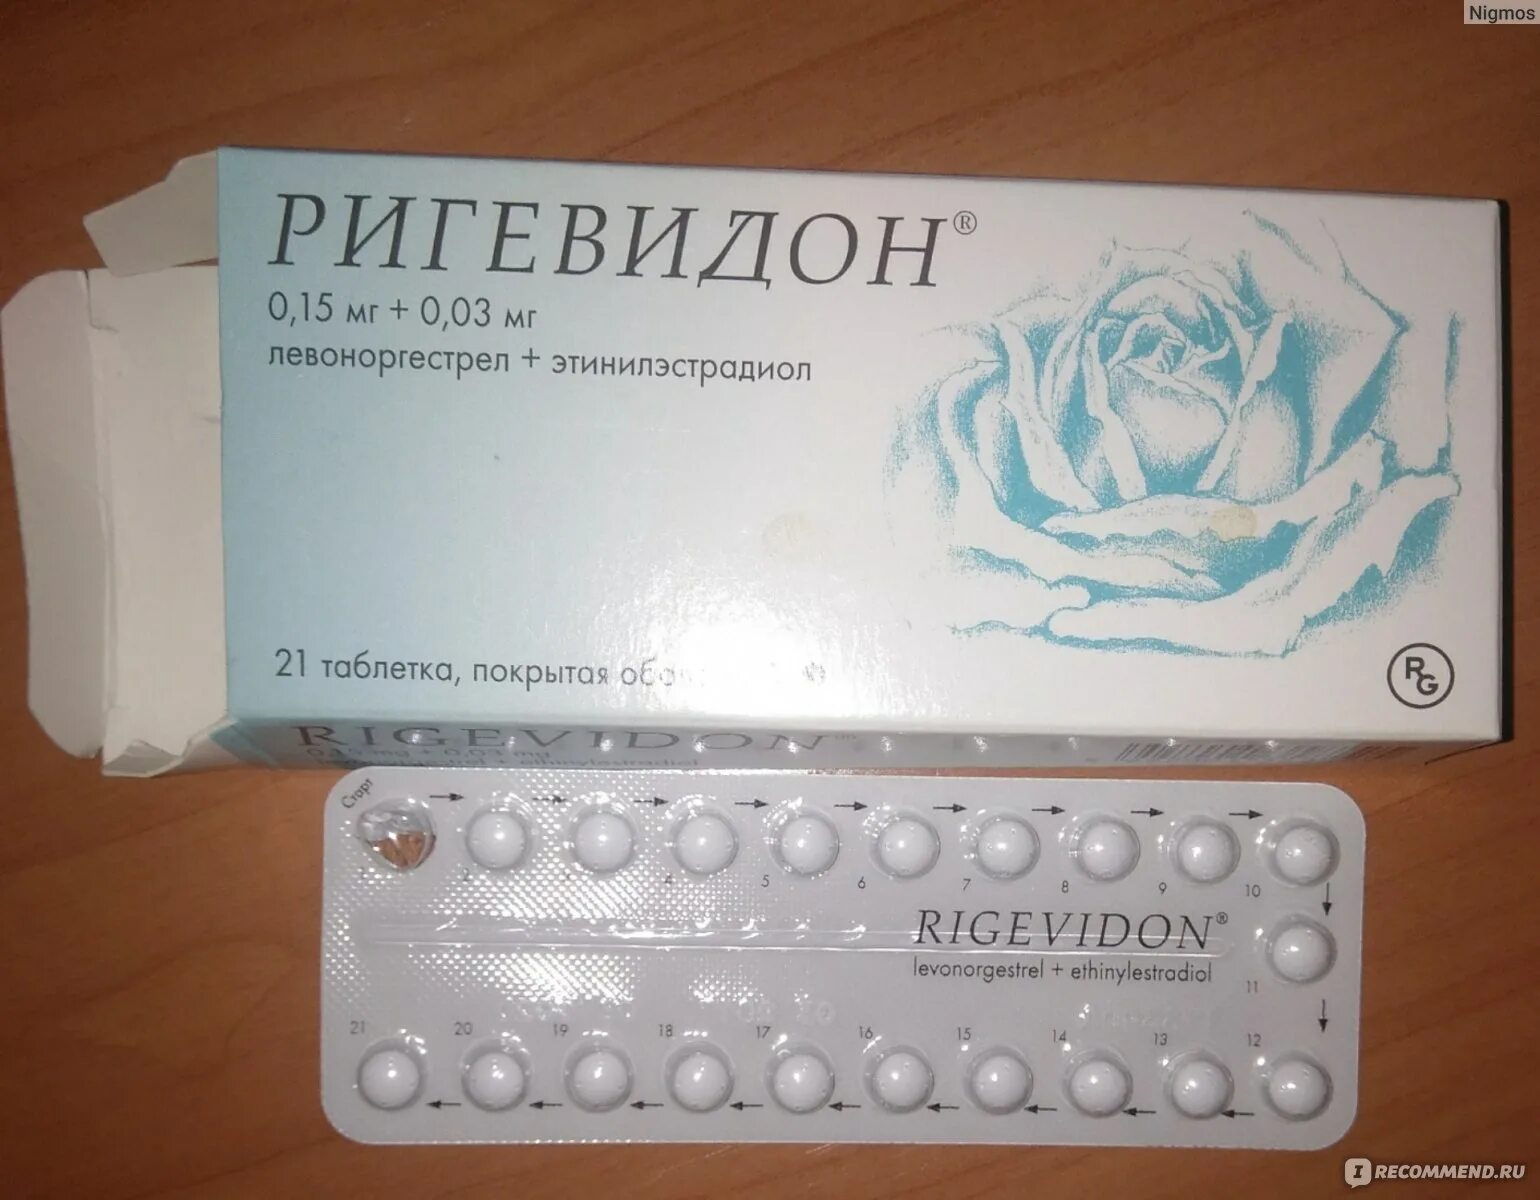 Противозачаточные таблетки ригевидон. Гормональный препарат ригевидон. Противозачаточные таблетки для женщин ригевидон. Таблетки противозачаточные реговидон. Контрацептивы месячные